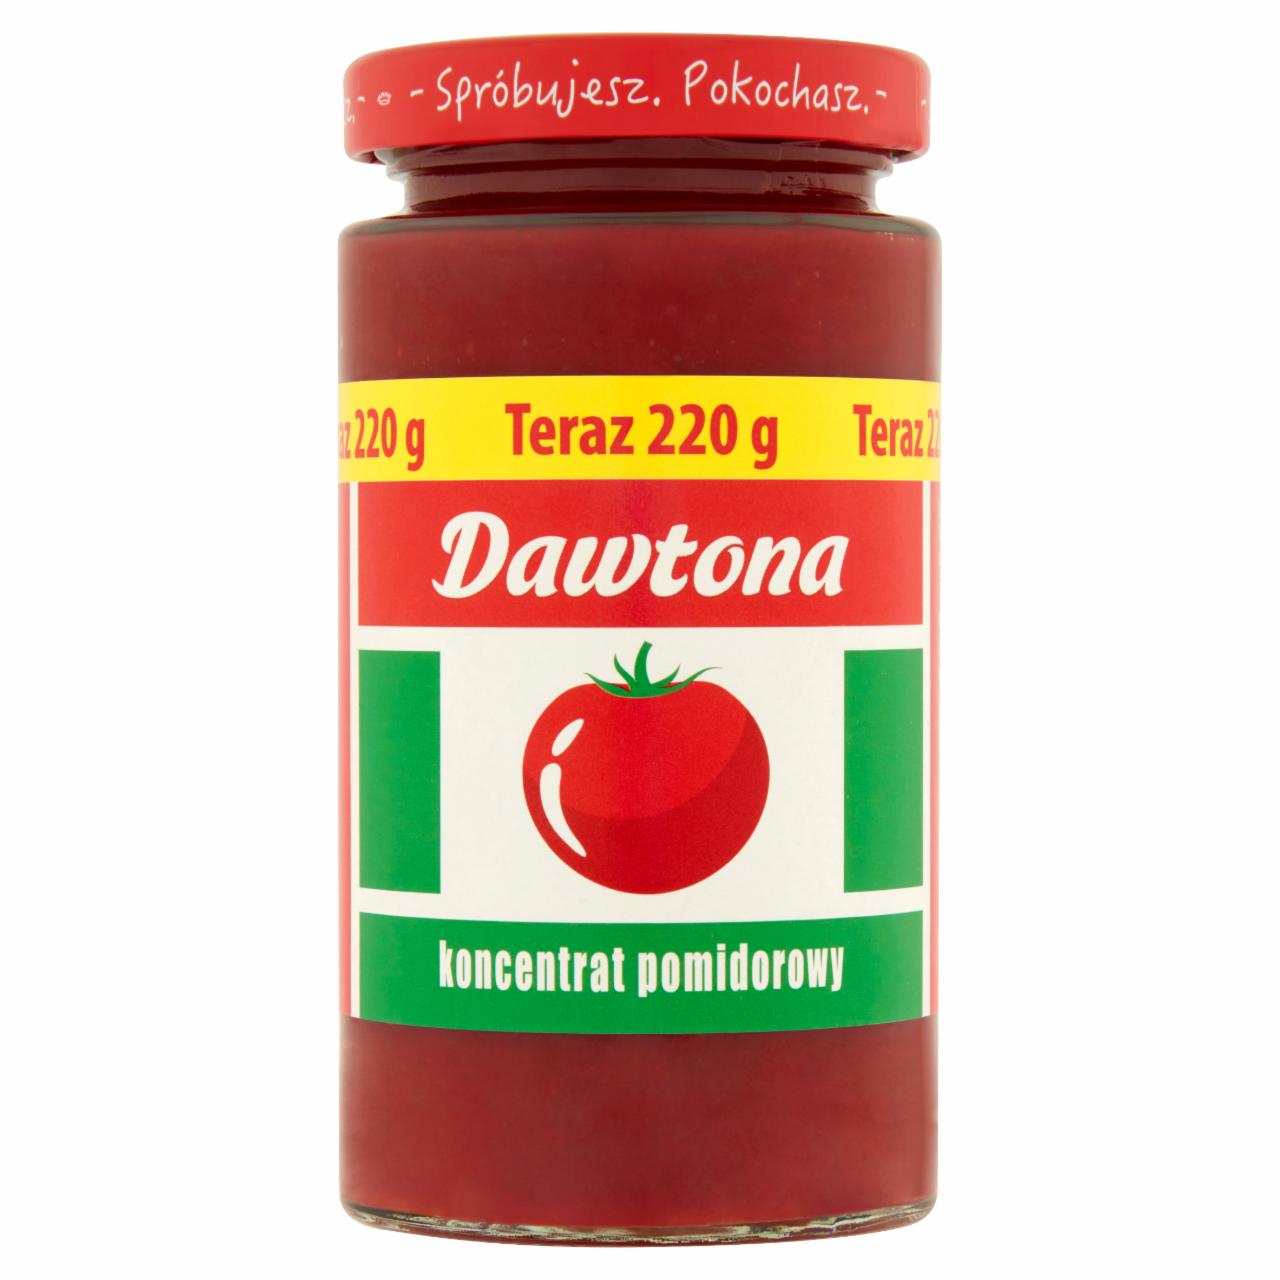 Zdjęcia - Dawtona Koncentrat pomidorowy 30% 220 g